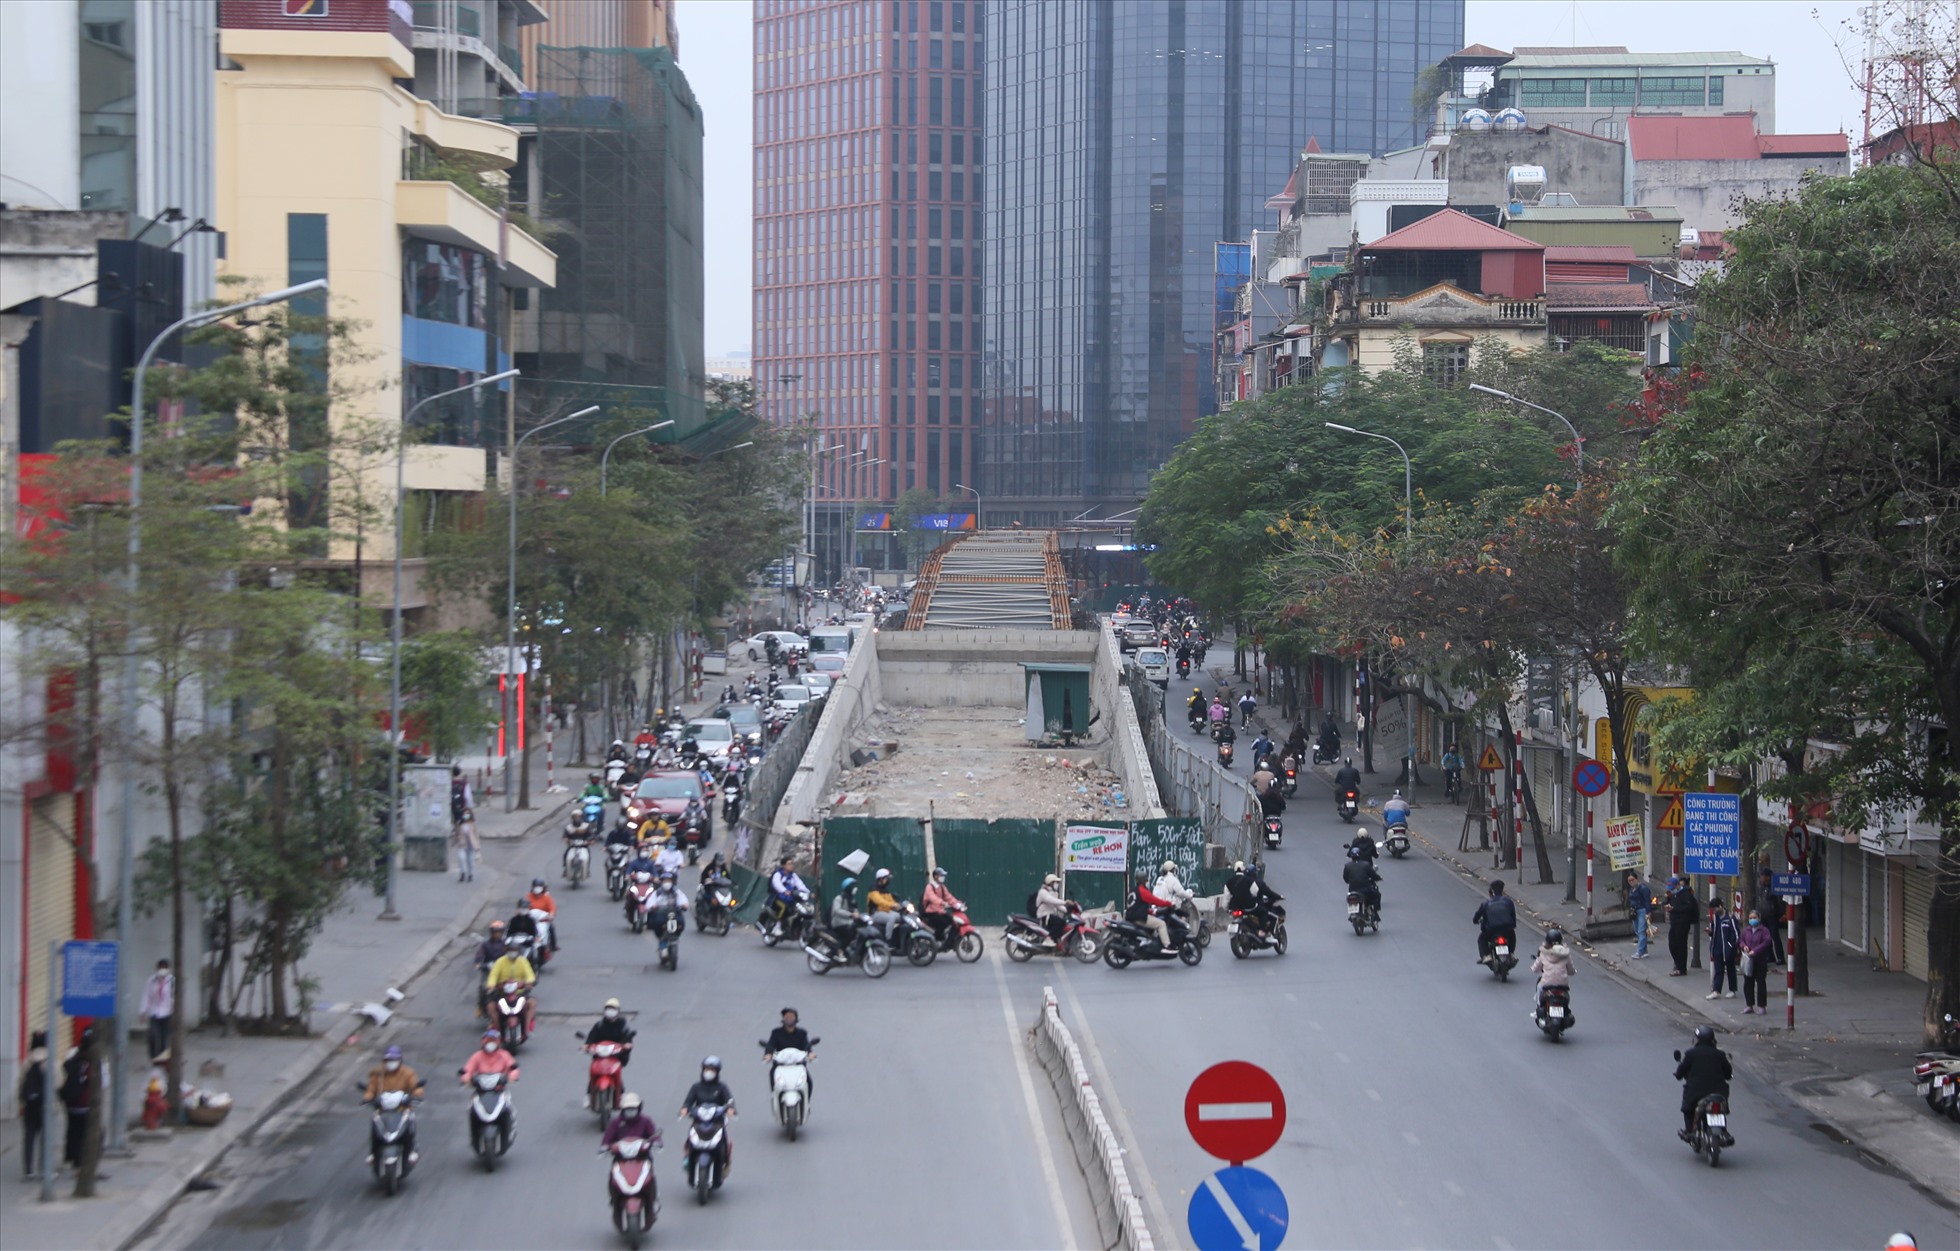 Dự án cầu vượt nút giao Chùa Bộc - Phạm Ngọc Thạch (quận Đống Đa) được triển khai từ tháng 10-2021, dự kiến hoàn thành vào tháng 6-2022, do Ban Quản lý dự án đầu tư xây dựng công trình giao thông thành phố Hà Nội làm chủ đầu tư.